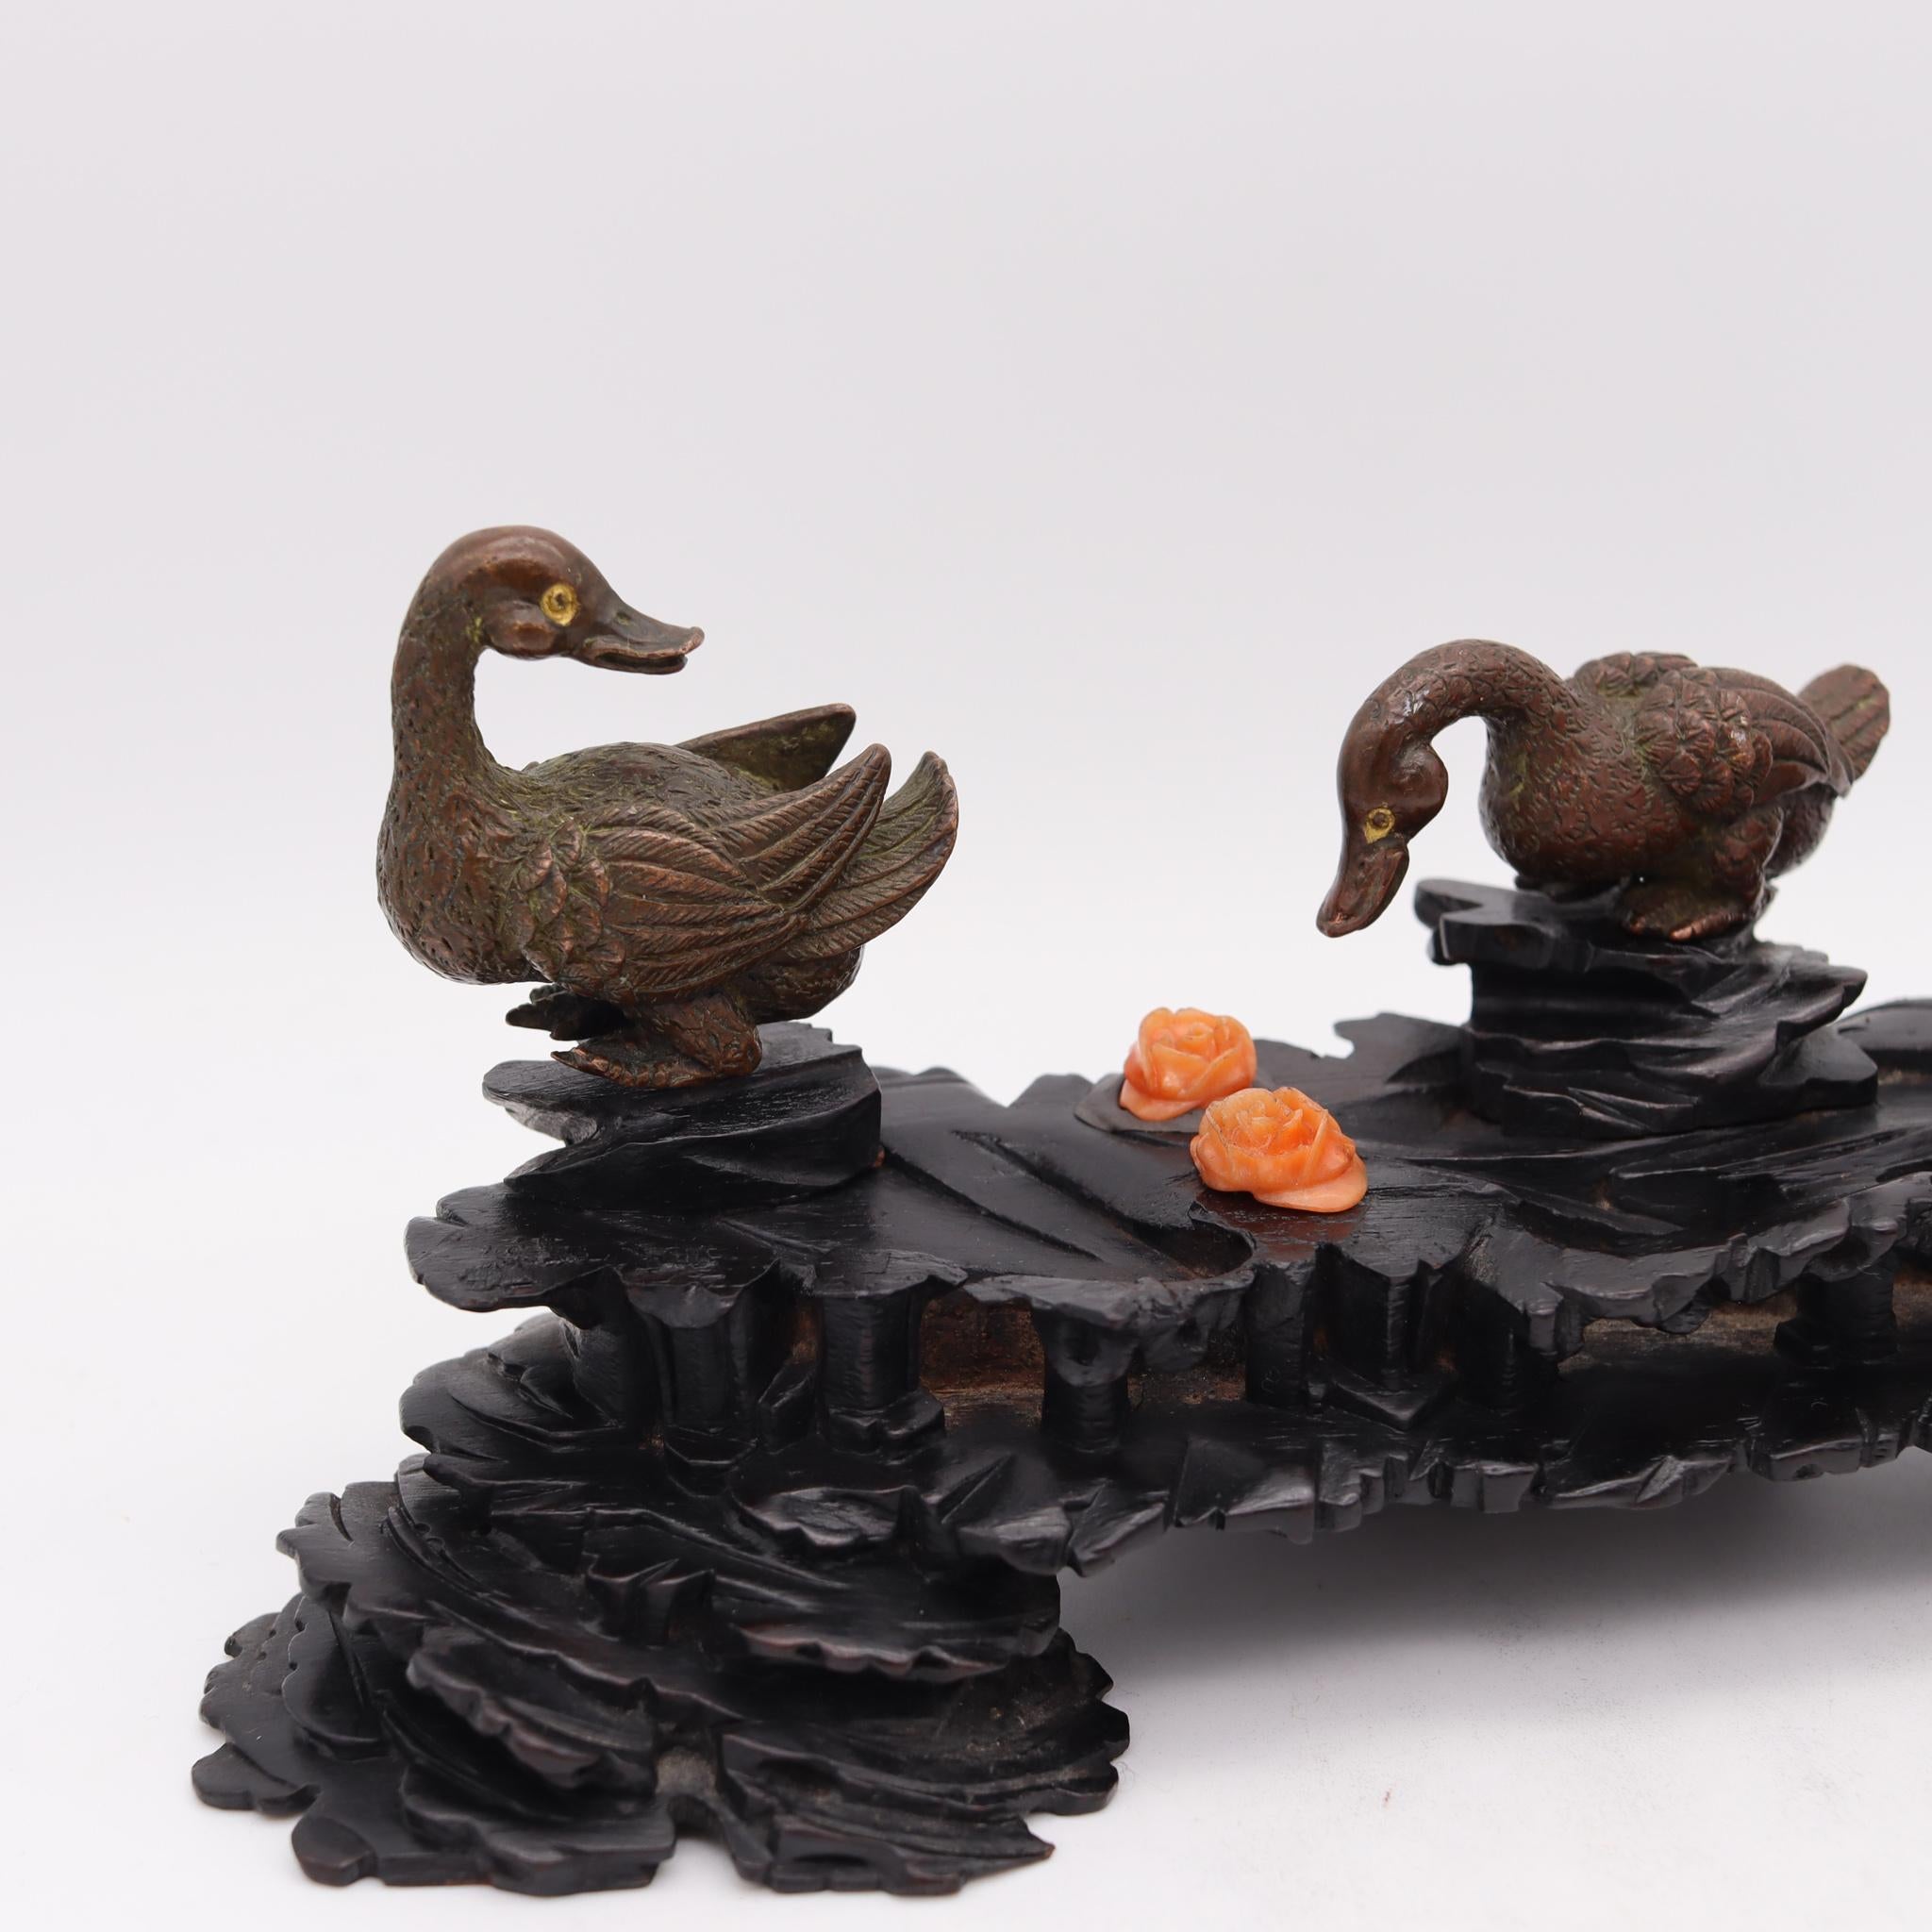 Composition sculpturale de canards de la période japonaise Meiji.

Belle et très bien réalisée composition sculpturale de trois canards, réalisée pendant la période impériale japonaise du Meiji, dans les années 1900. Cette pièce est composée de